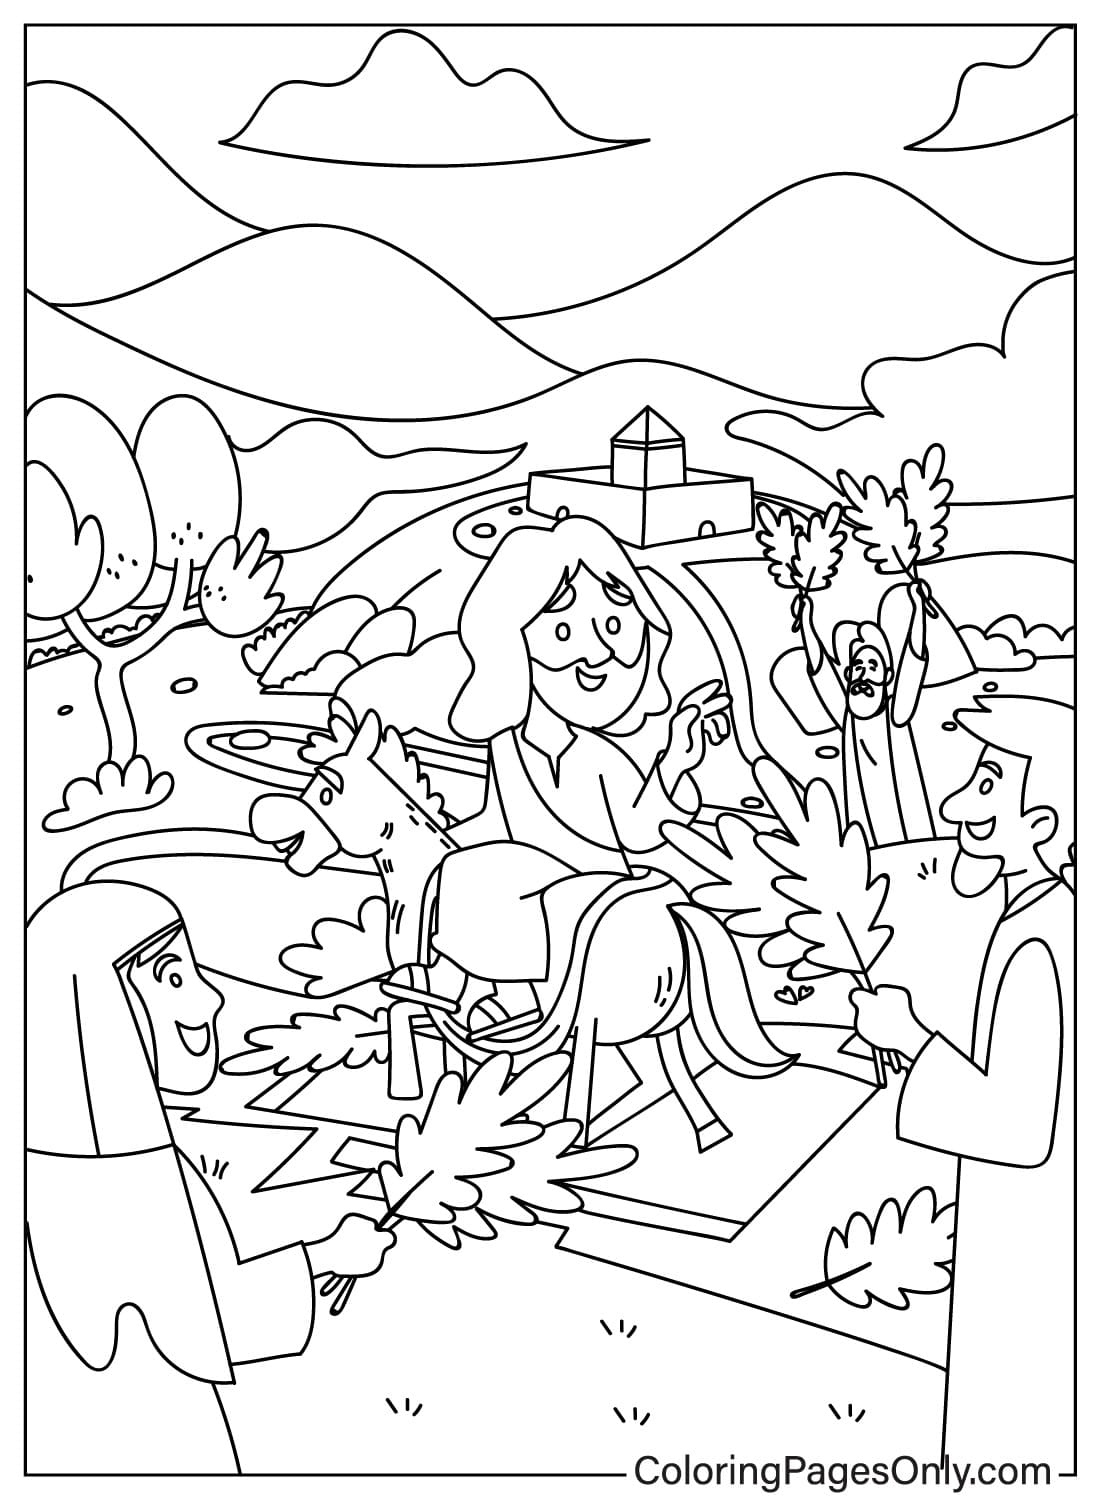 Раскраска Вербное воскресенье для печати из Вербного воскресенья